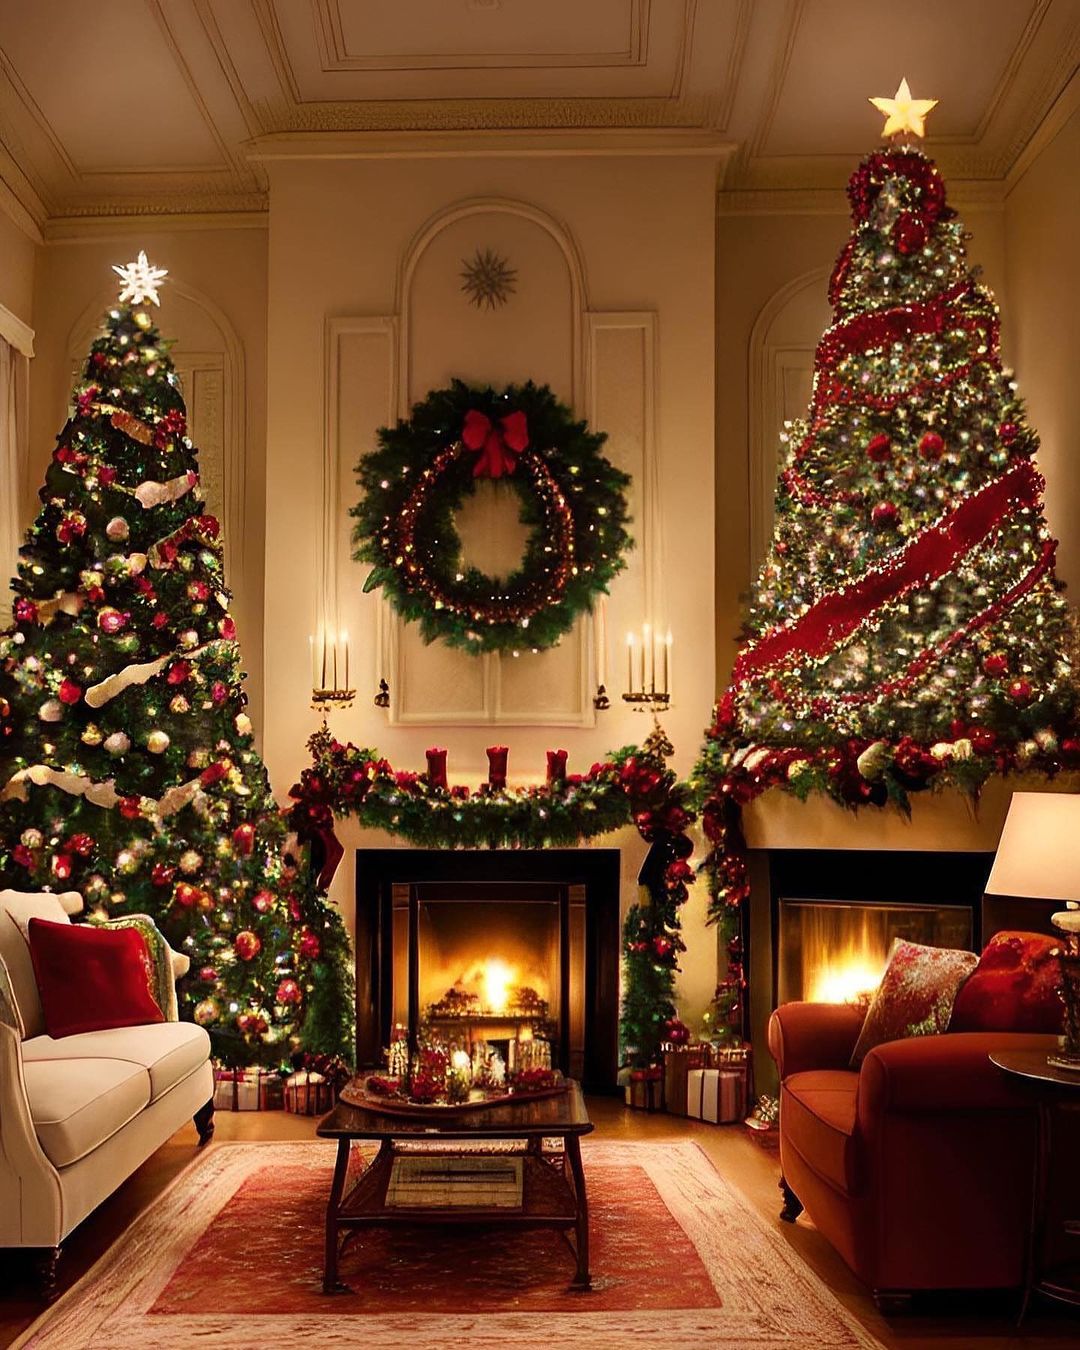 12 Christmas Decor Ideas